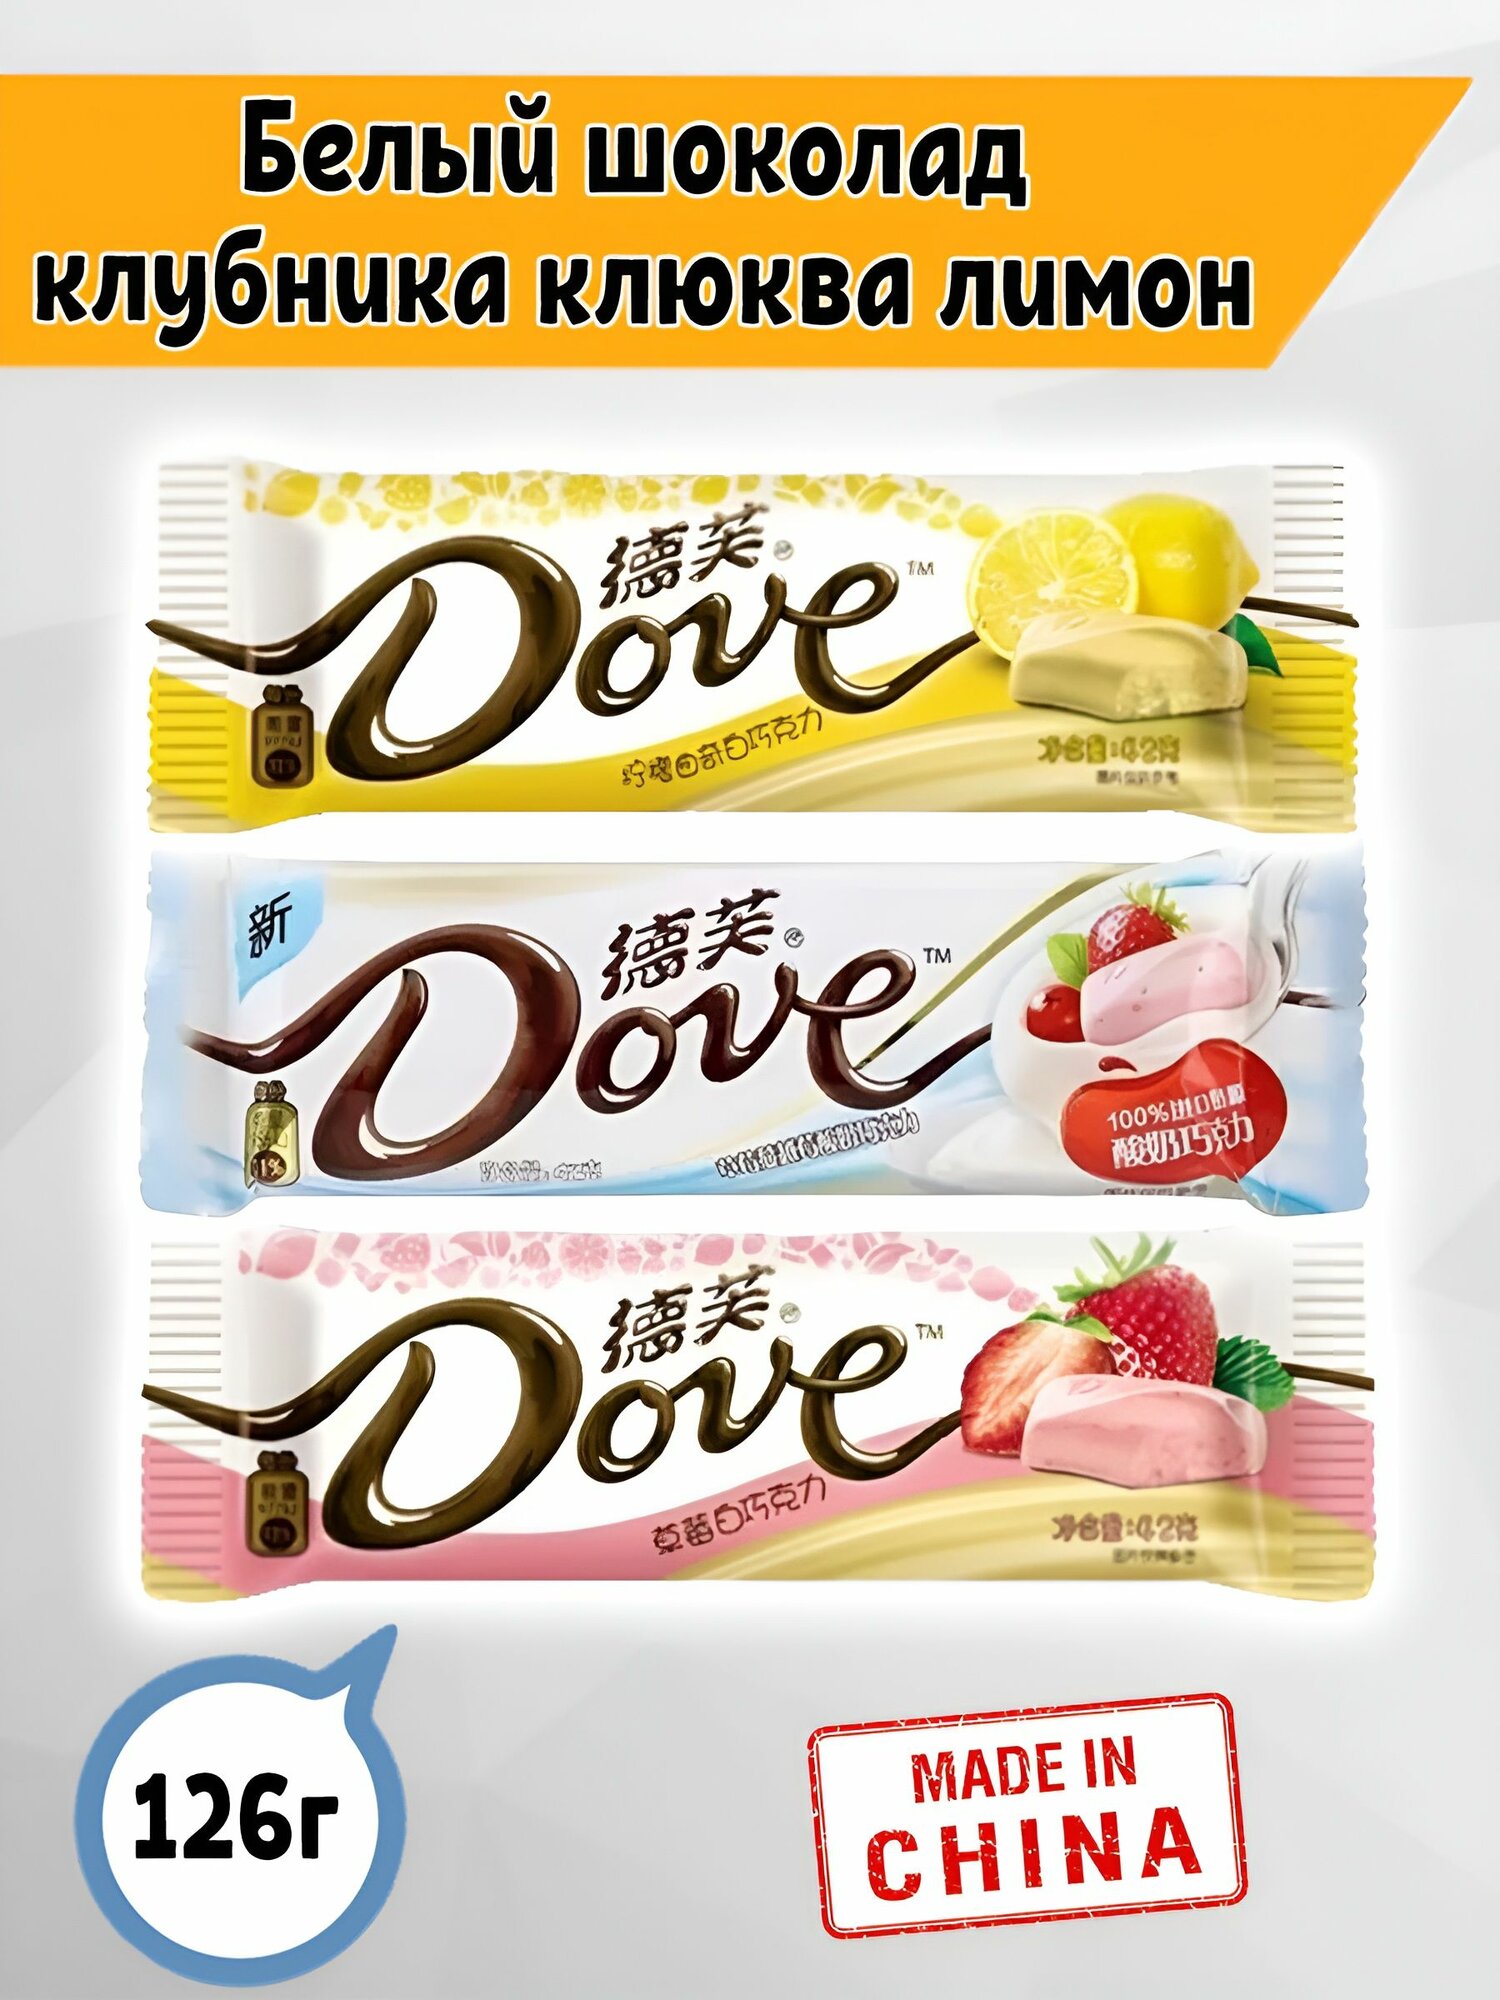 Белый шоколад Dove Йогурт Клубника и Клюква, Лимон, Клубника, 3шт. по 42 гр. Китай